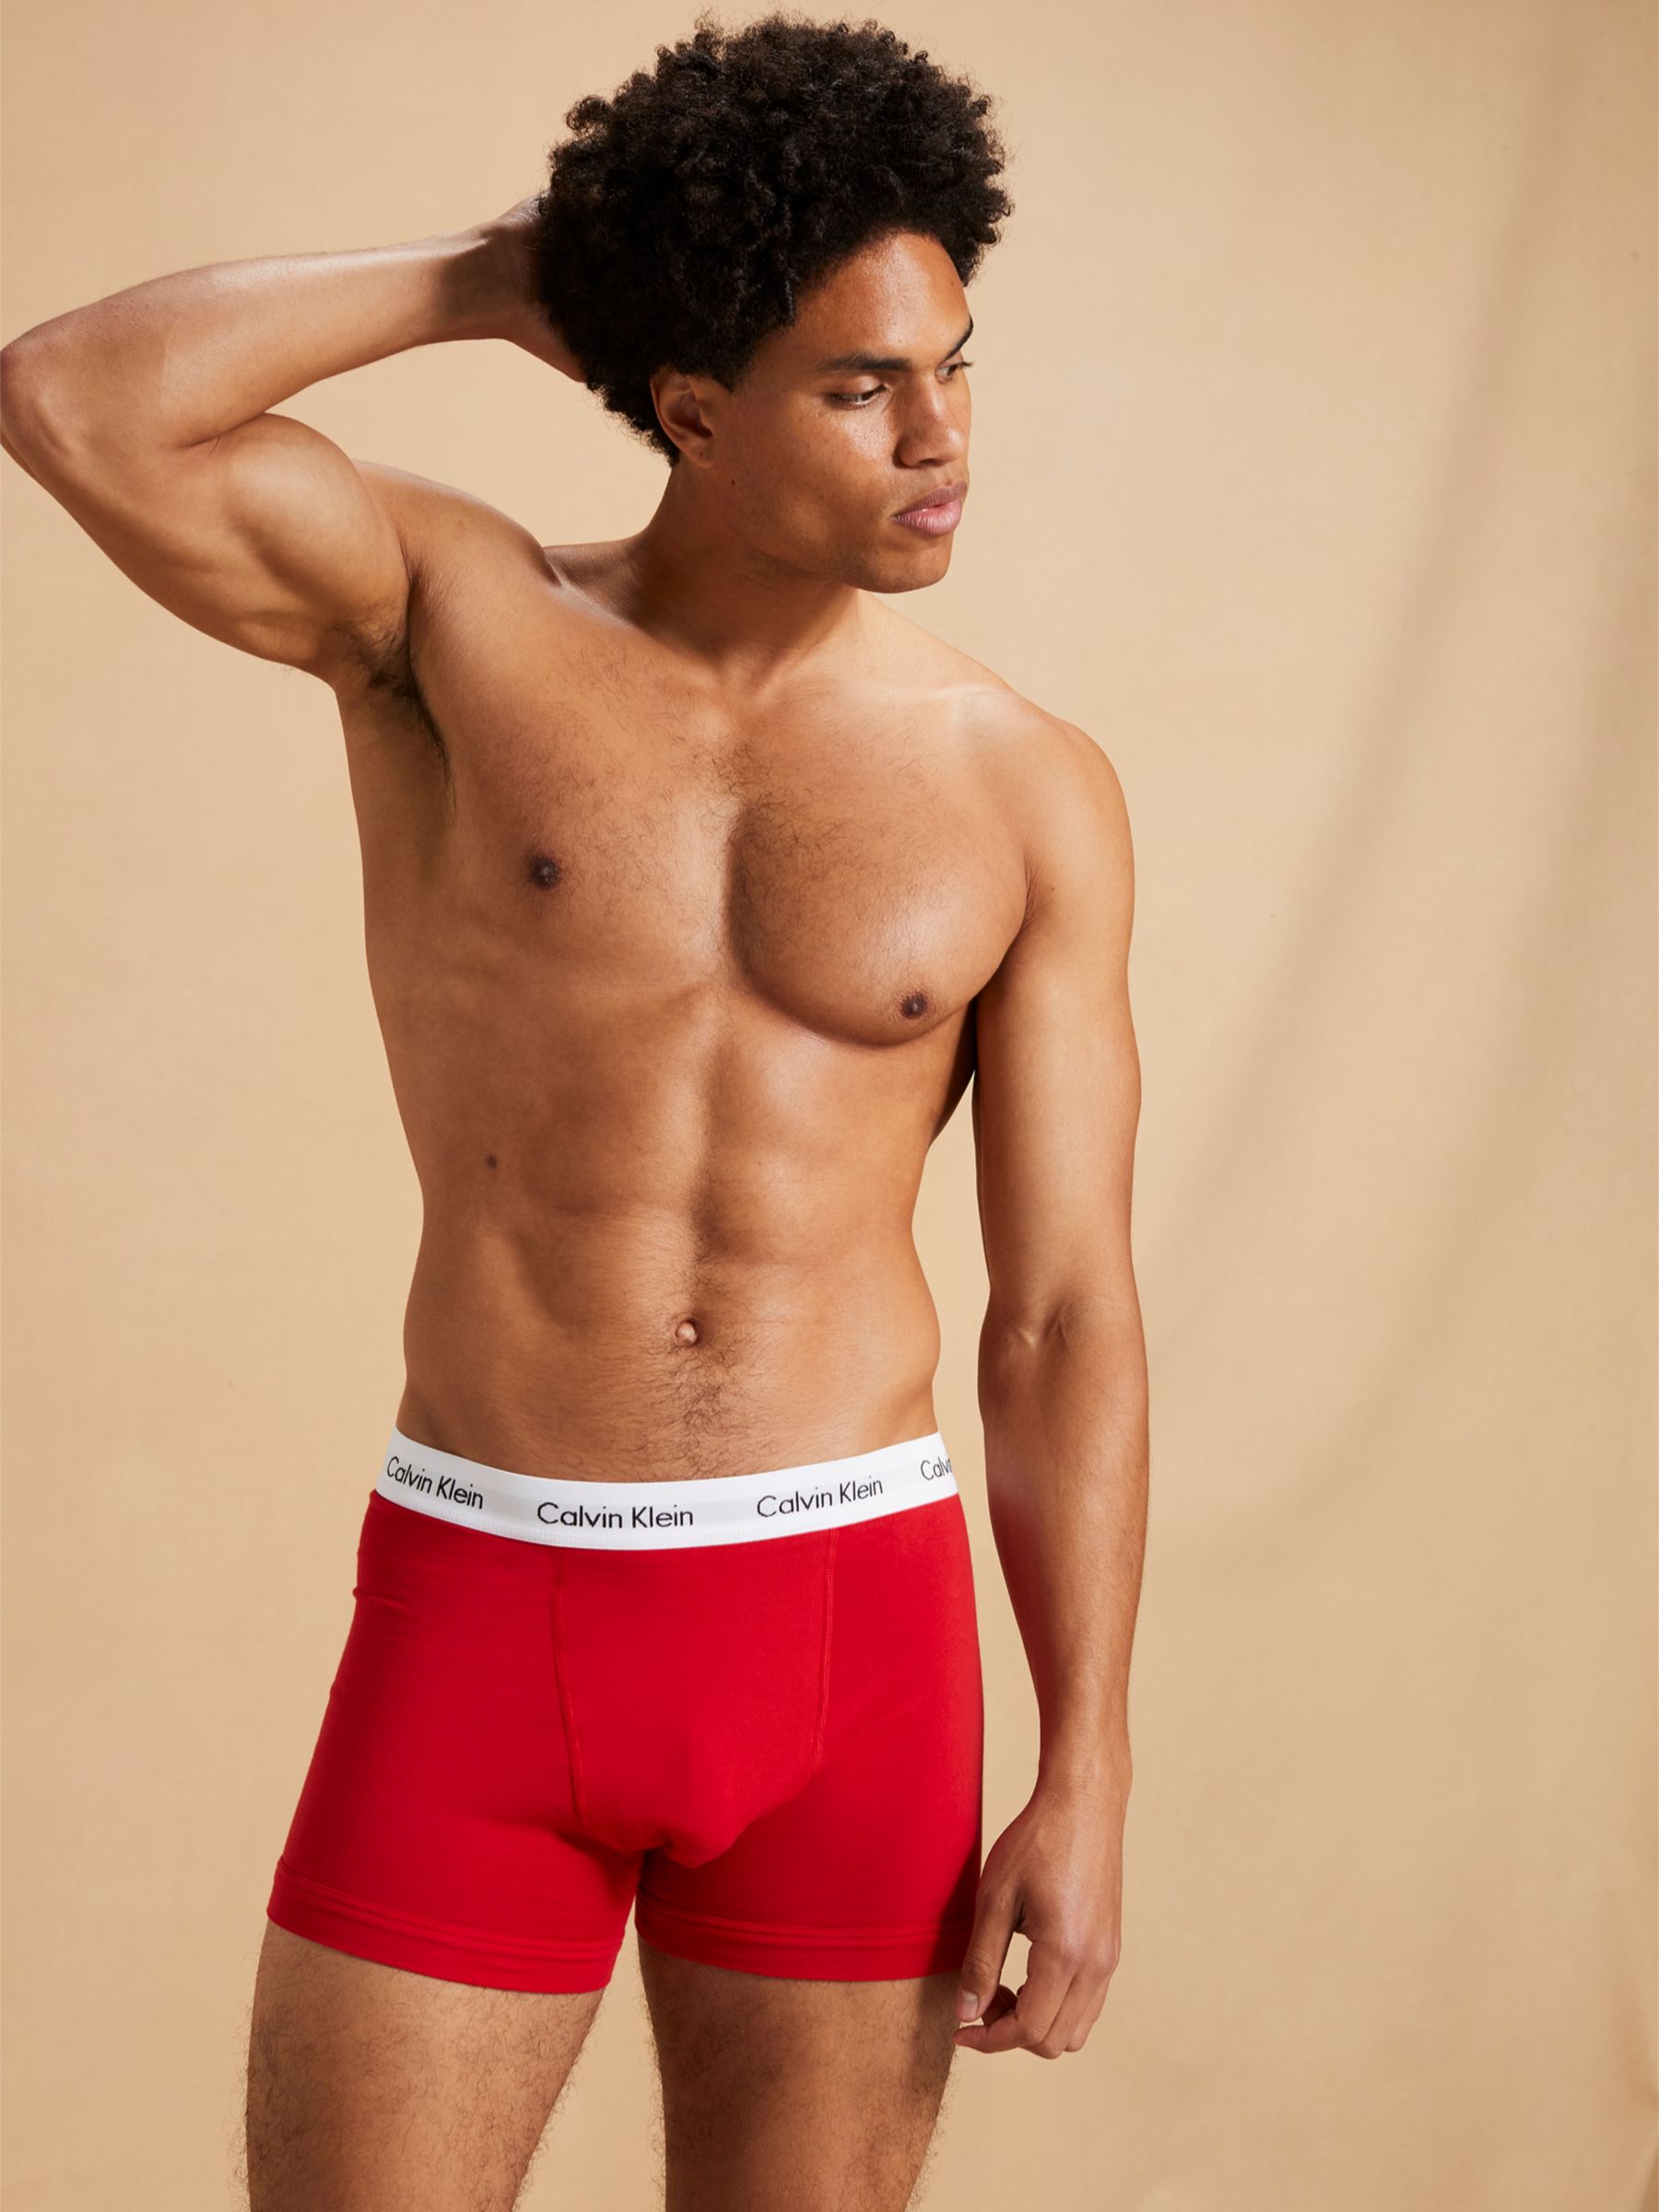 Red Calvin Klein Underwear - Buy Red Calvin Klein Underwear online